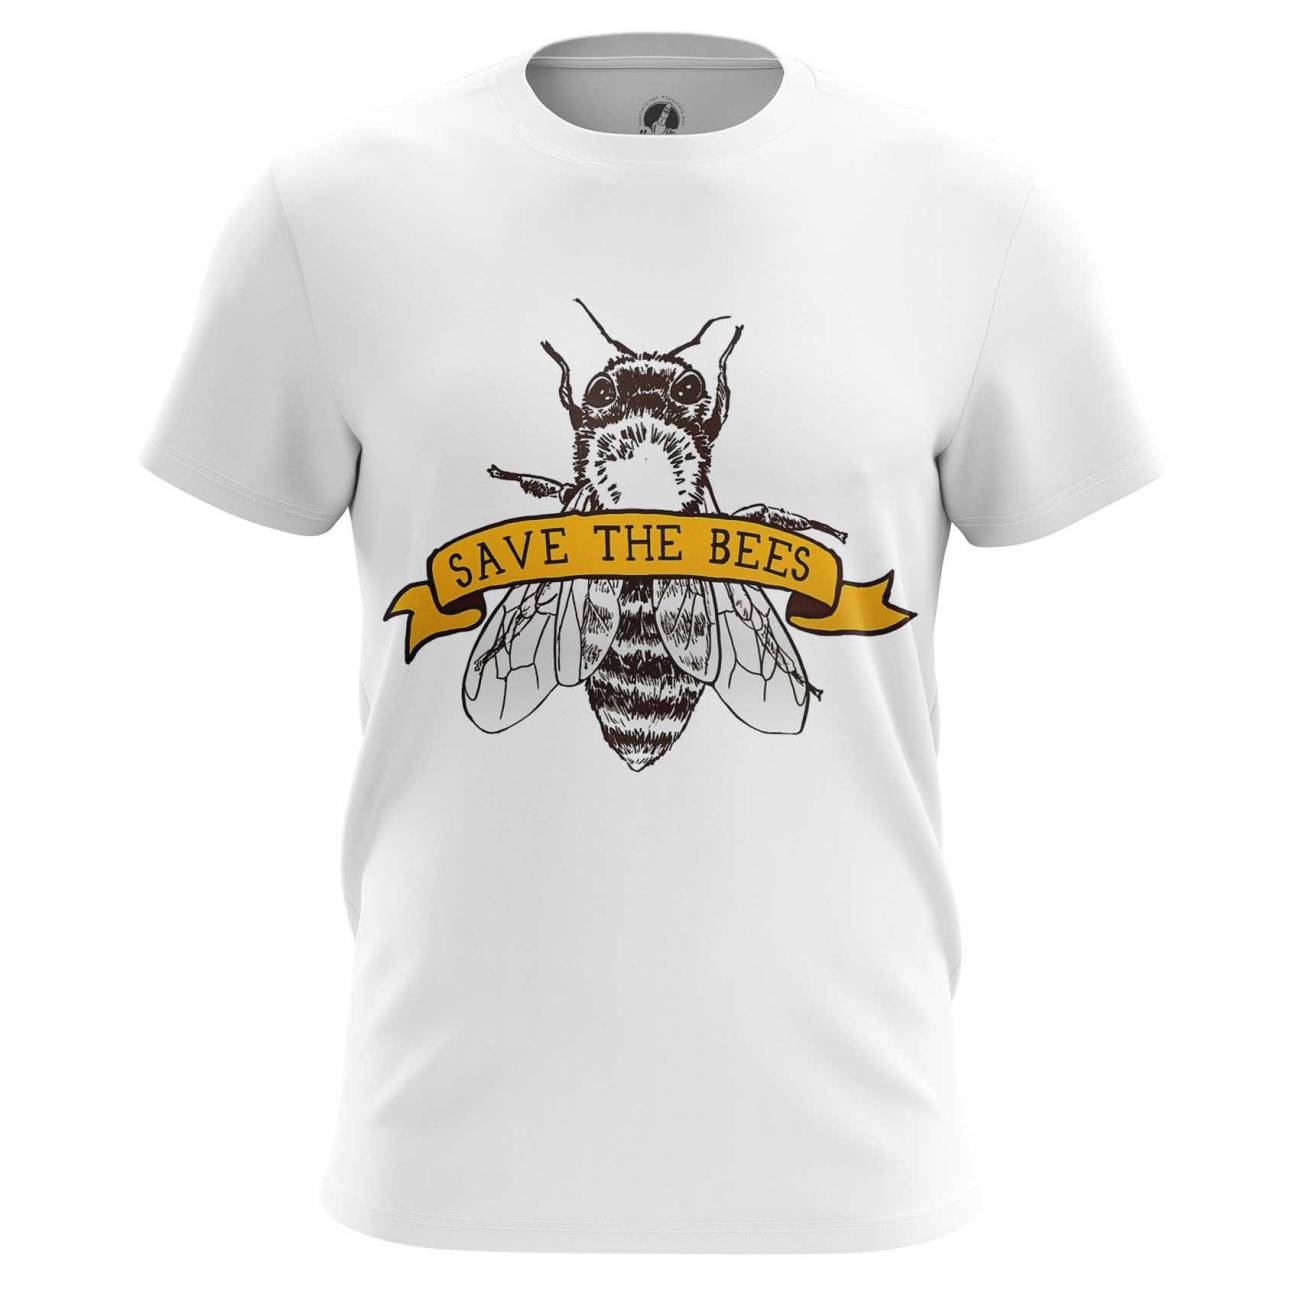 Купить атрибутику Футболка Save the bees Сохраните пчёл Мужская атрибутика